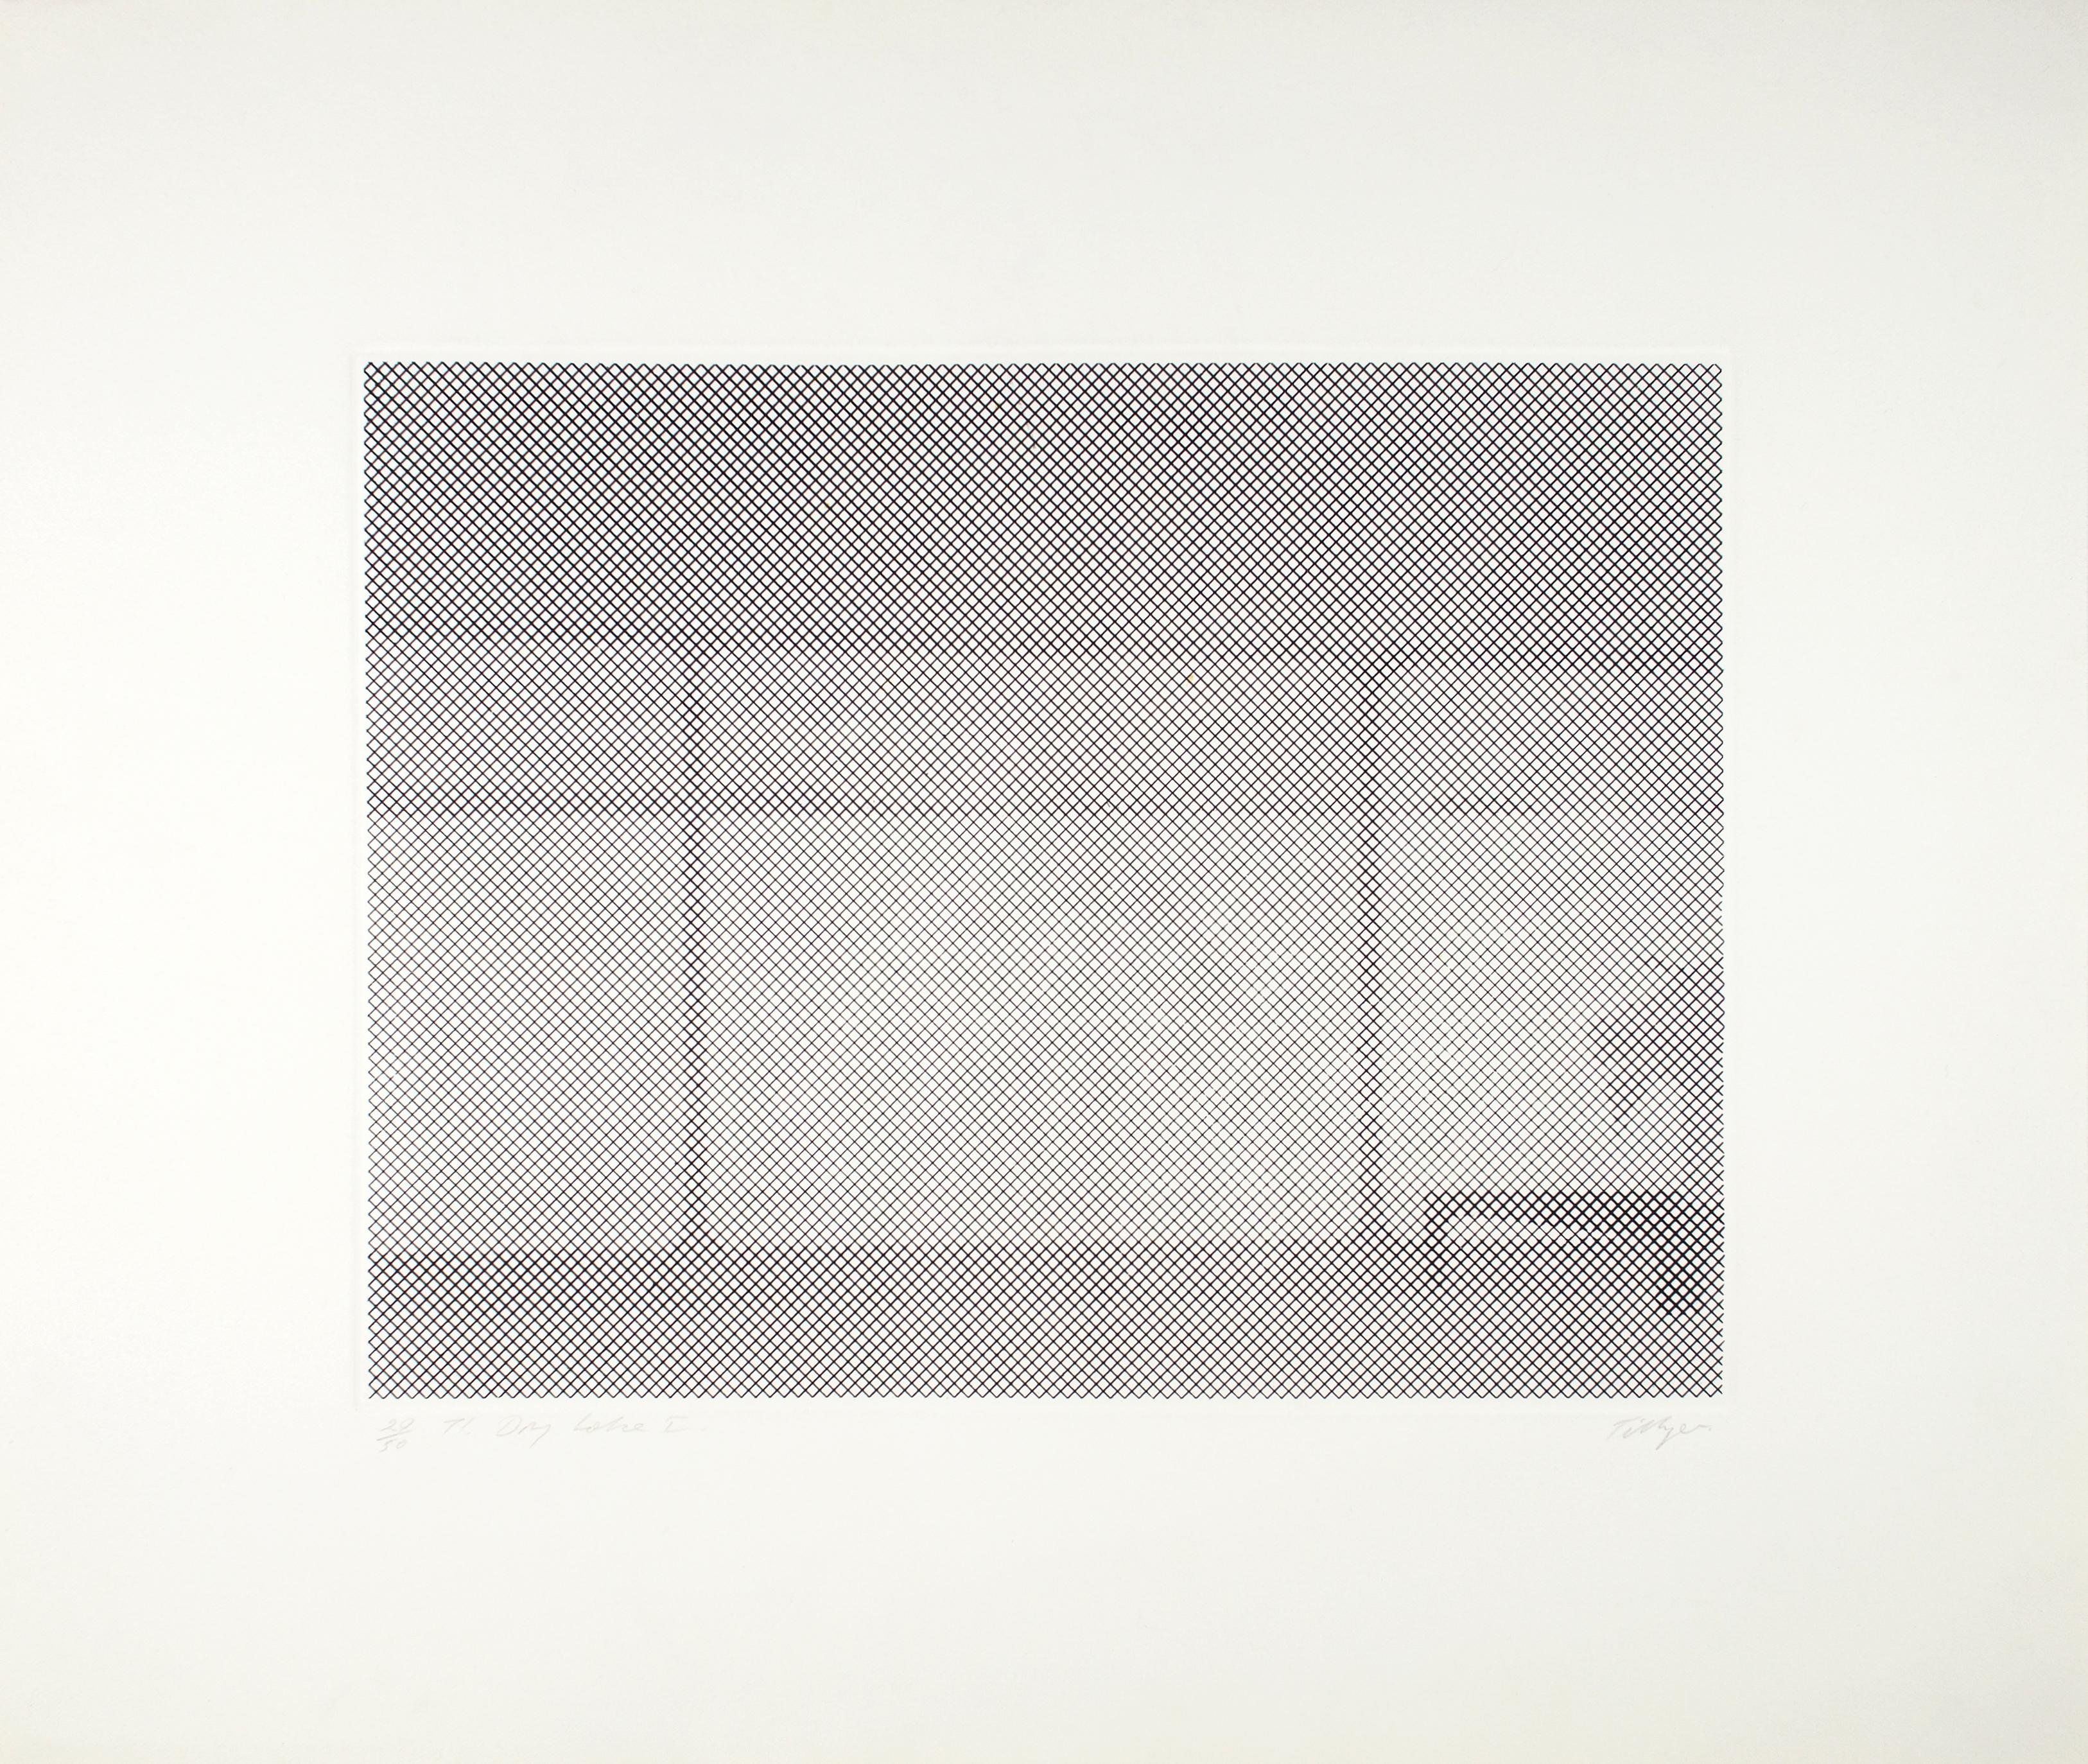 William Tillyer
Trockener See I-IV
1971
Ätzen
Auflage von 50 Stück
55.9 x 66,7 cm (22 x 26 1/4 Zoll) (Papierformat)
32.4 x 43,4 cm (12 3/4 x 17 1/8 ins) (Plattengröße)
WTE019